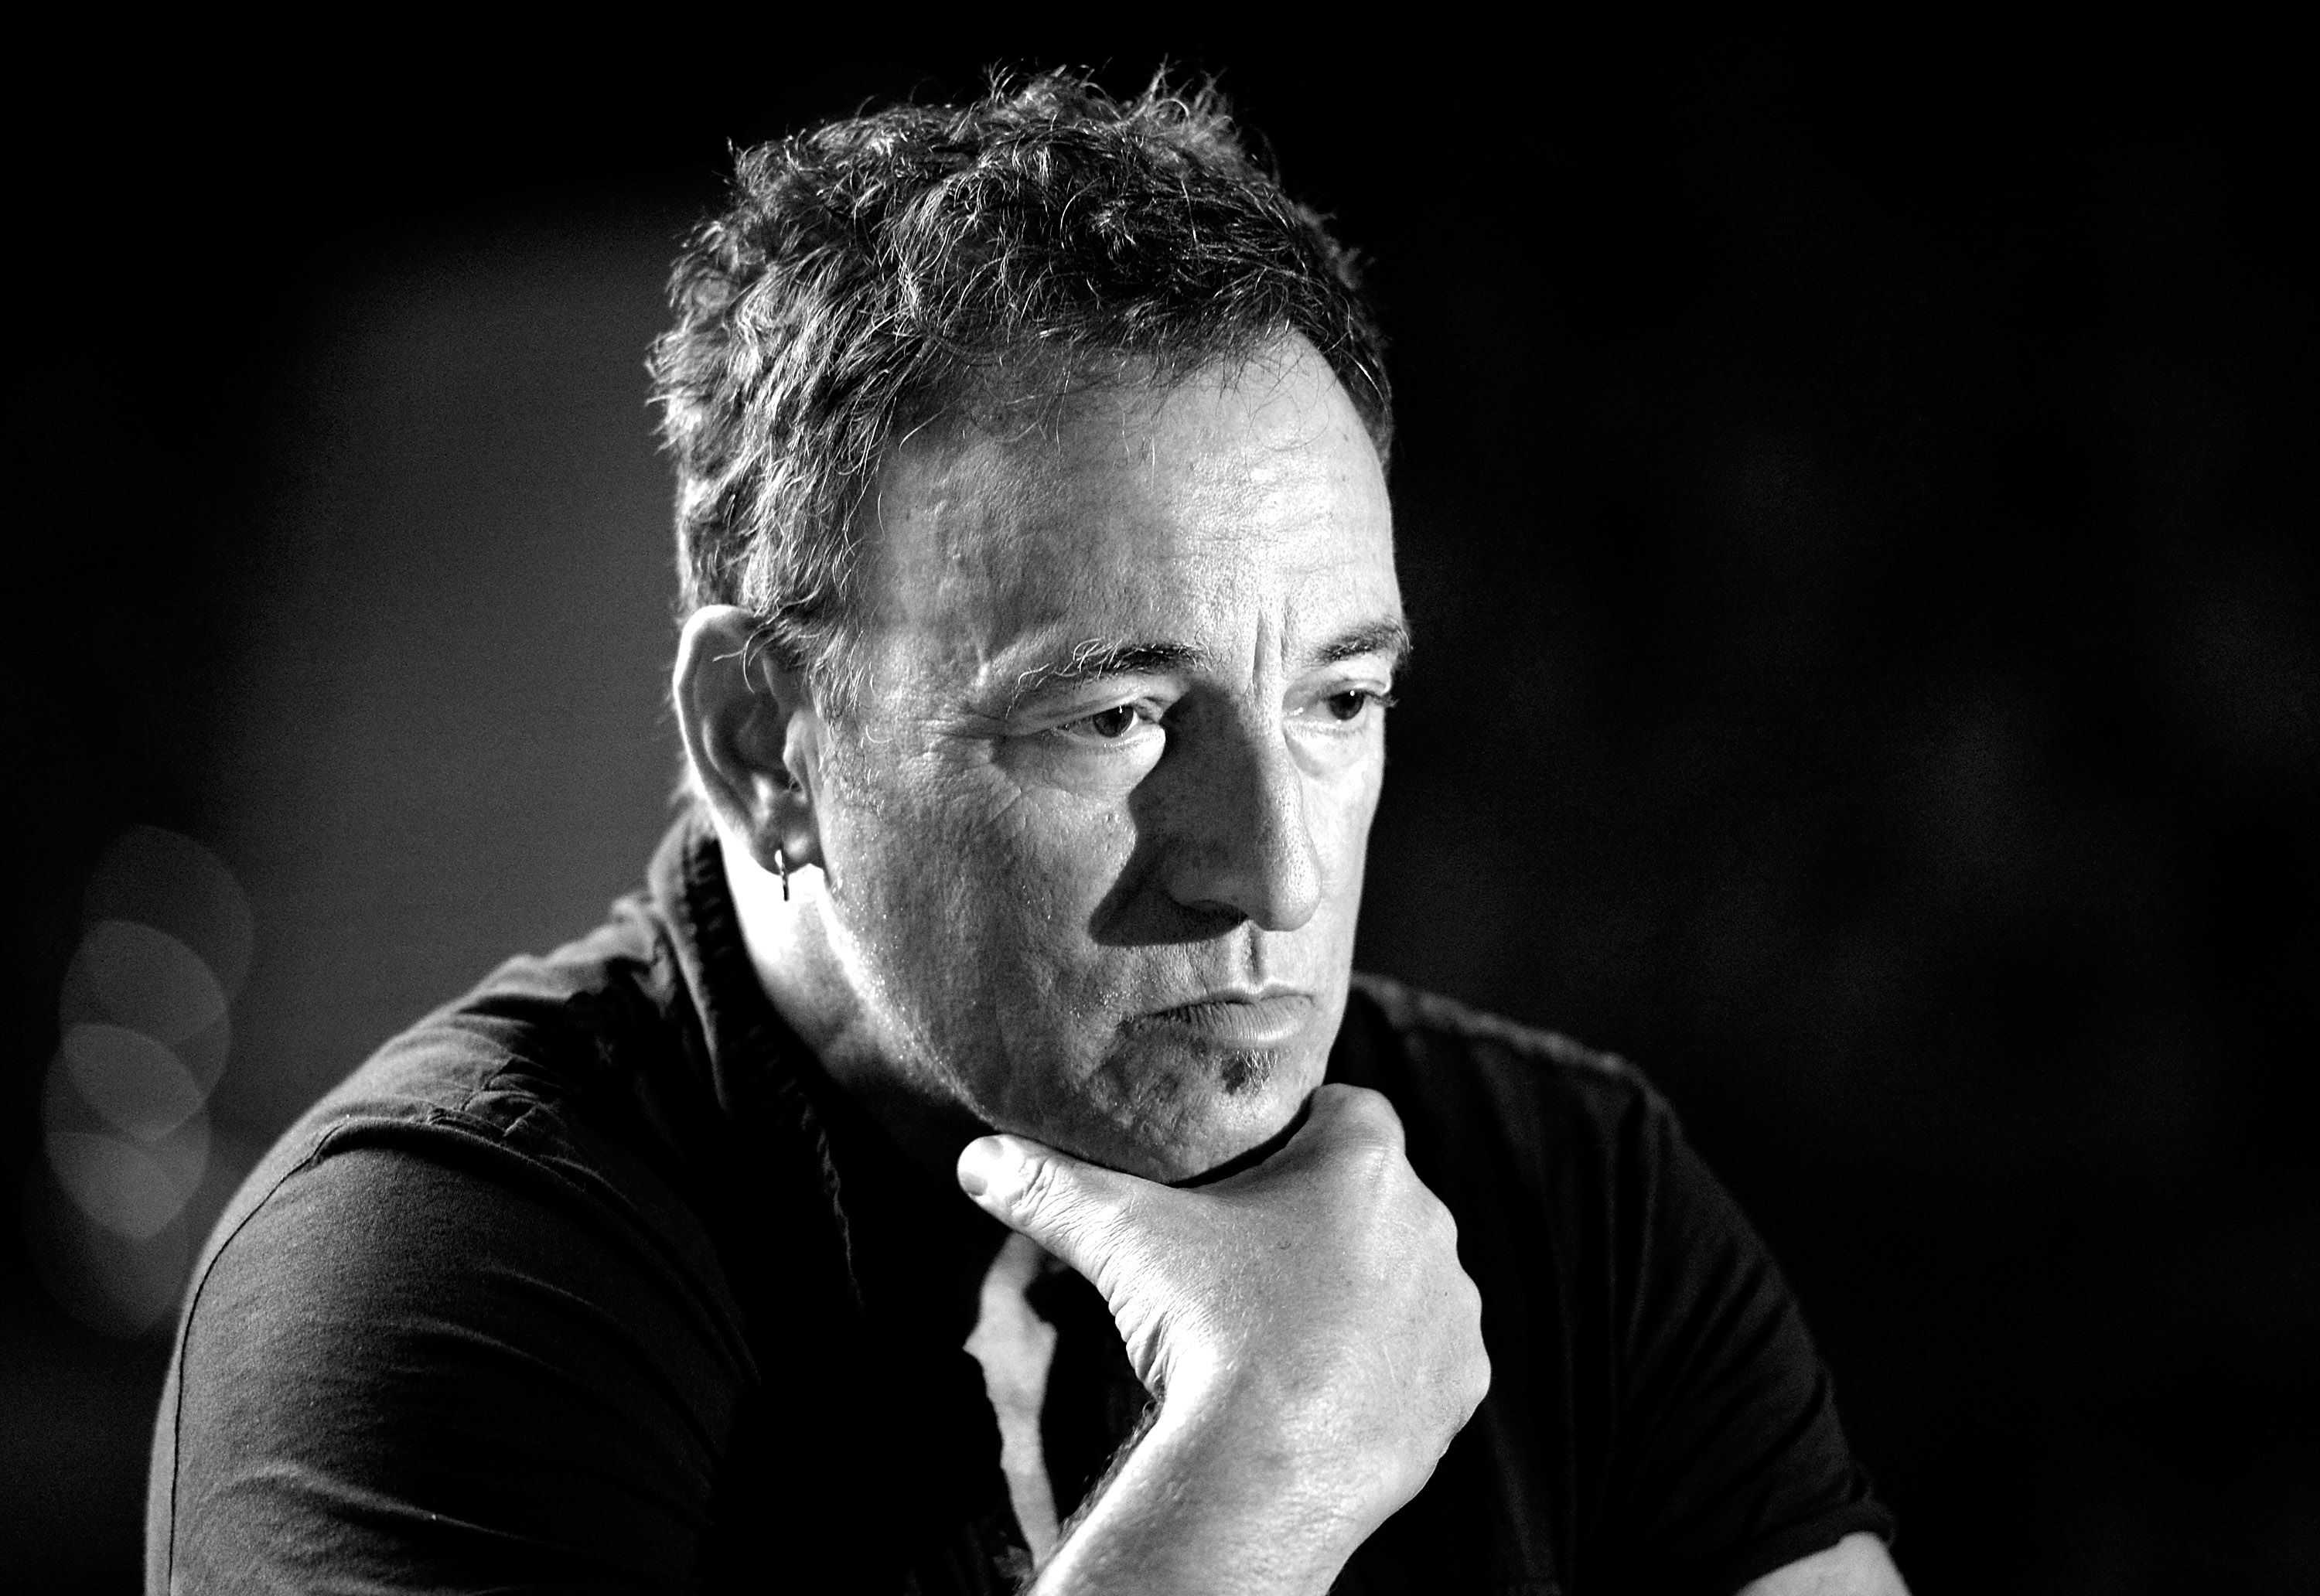 Een verontschuldigingsbrief van Bruce Springsteen voor het laten winnen van Trump